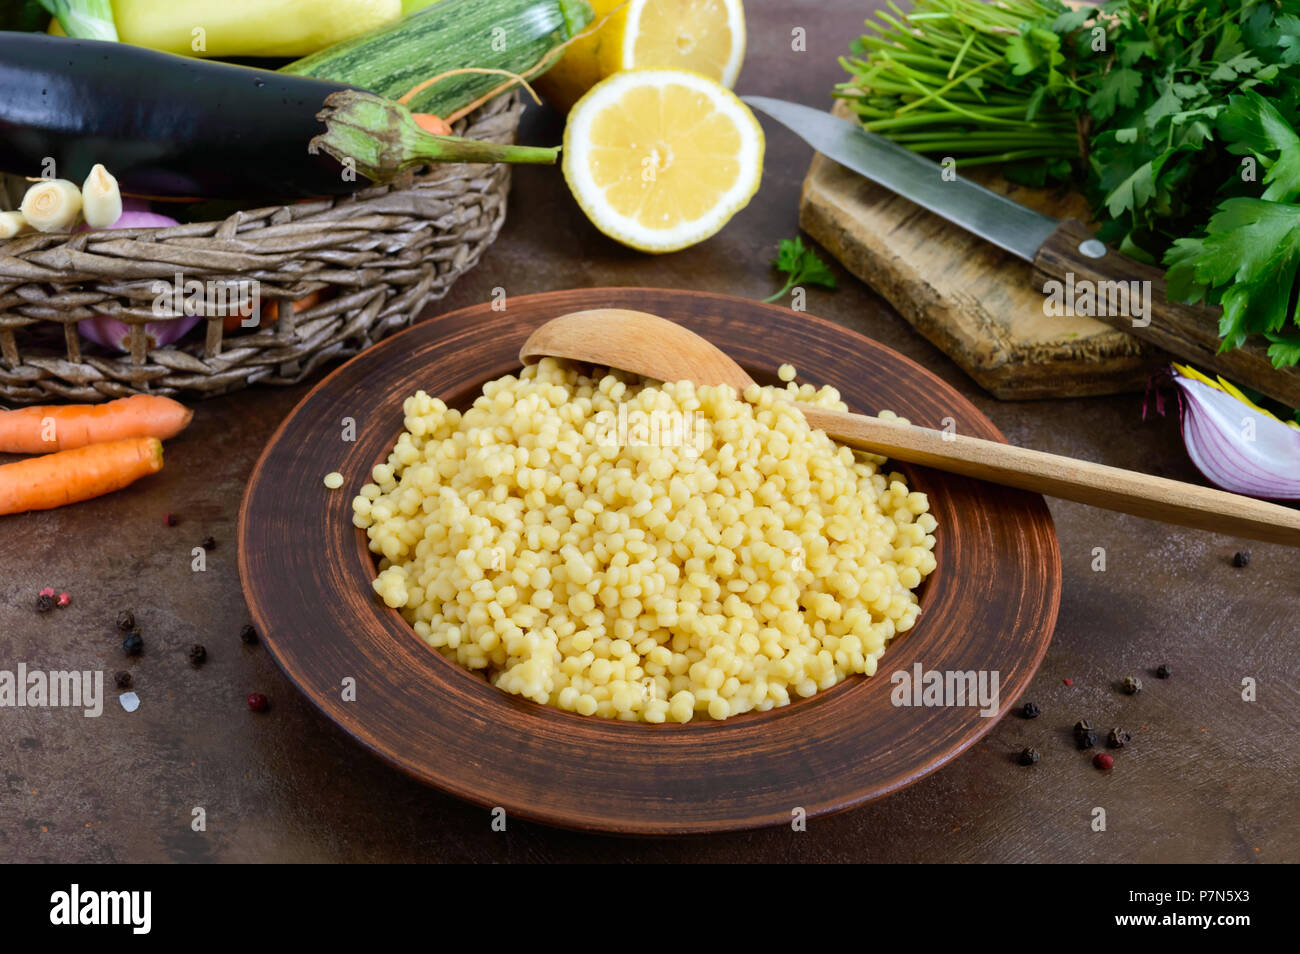 Couscous délicieux porridge utile dans une plaque d'argile et de matières premières dans un panier de légumes frais, verts, citron. Ingrédients pour cuisiner un taboulé. Des plats végétariens Banque D'Images